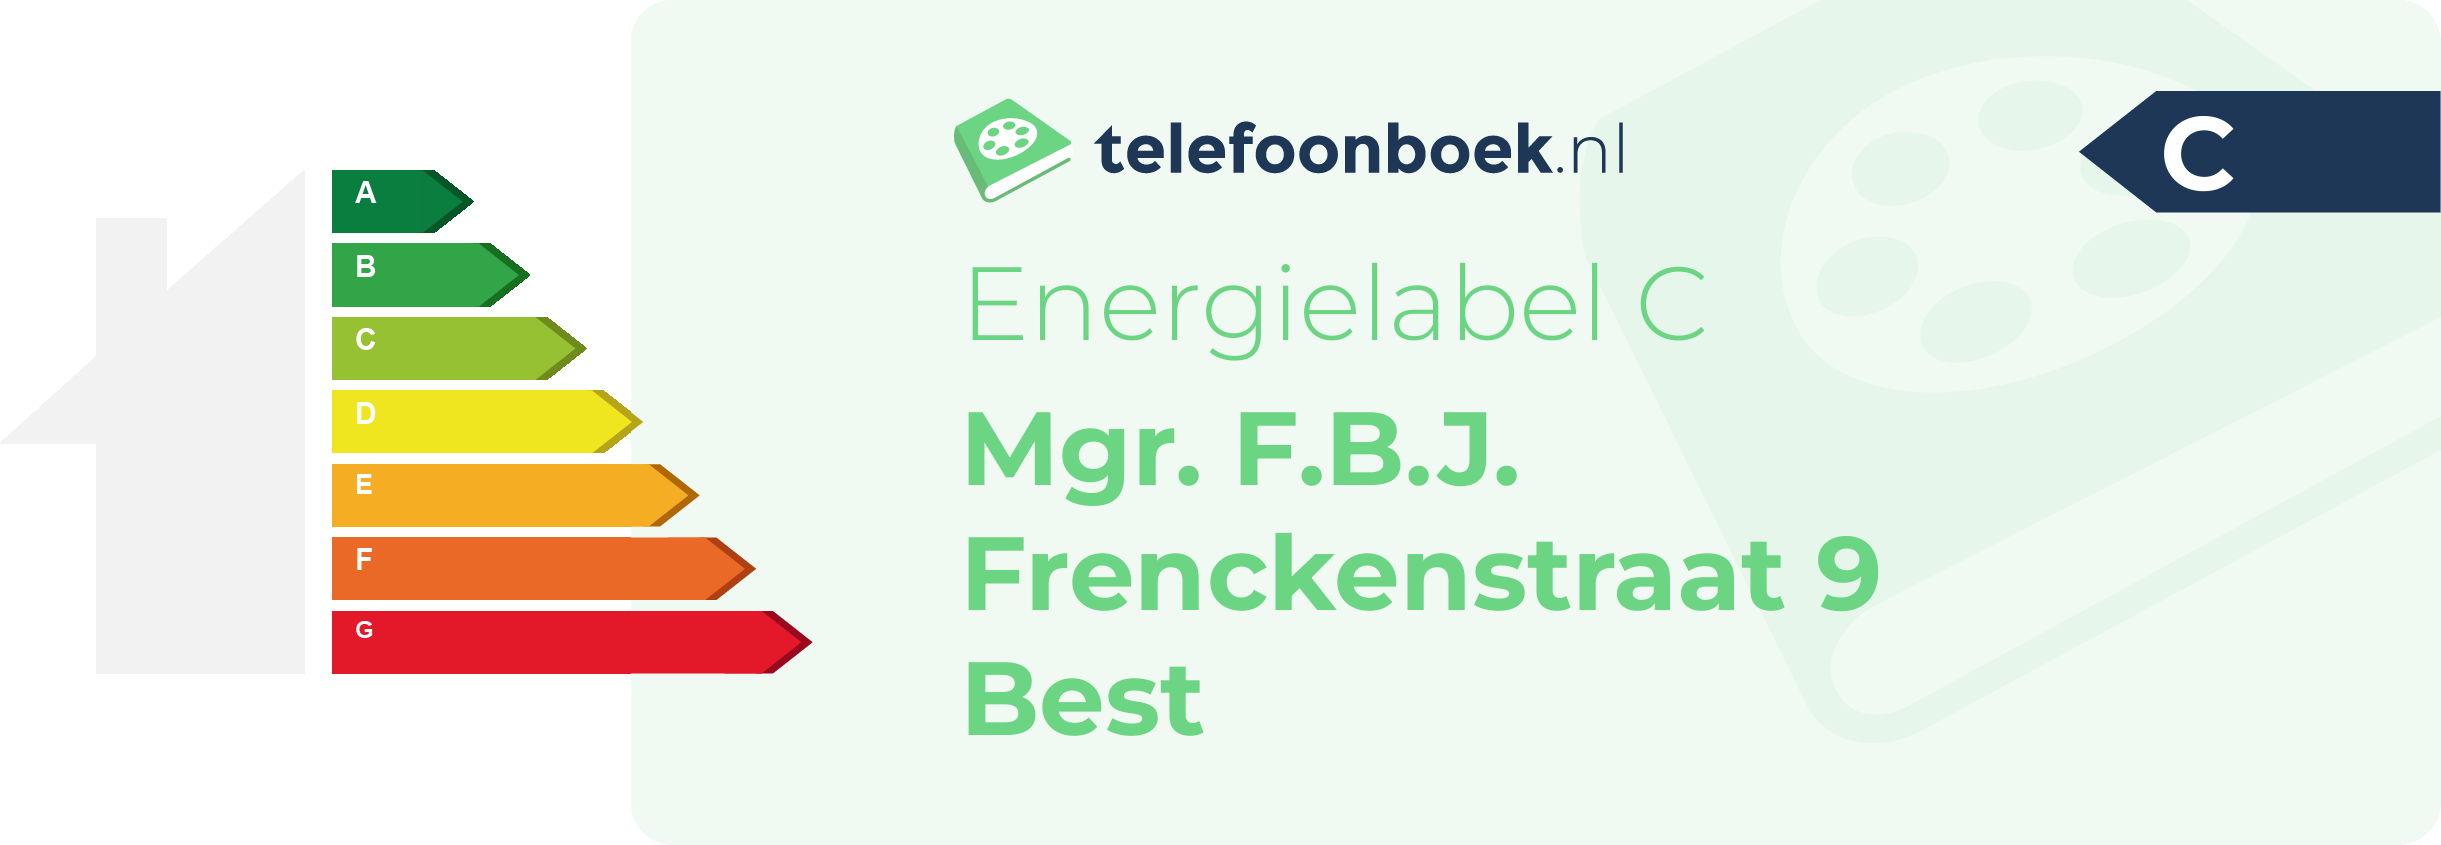 Energielabel Mgr. F.B.J. Frenckenstraat 9 Best